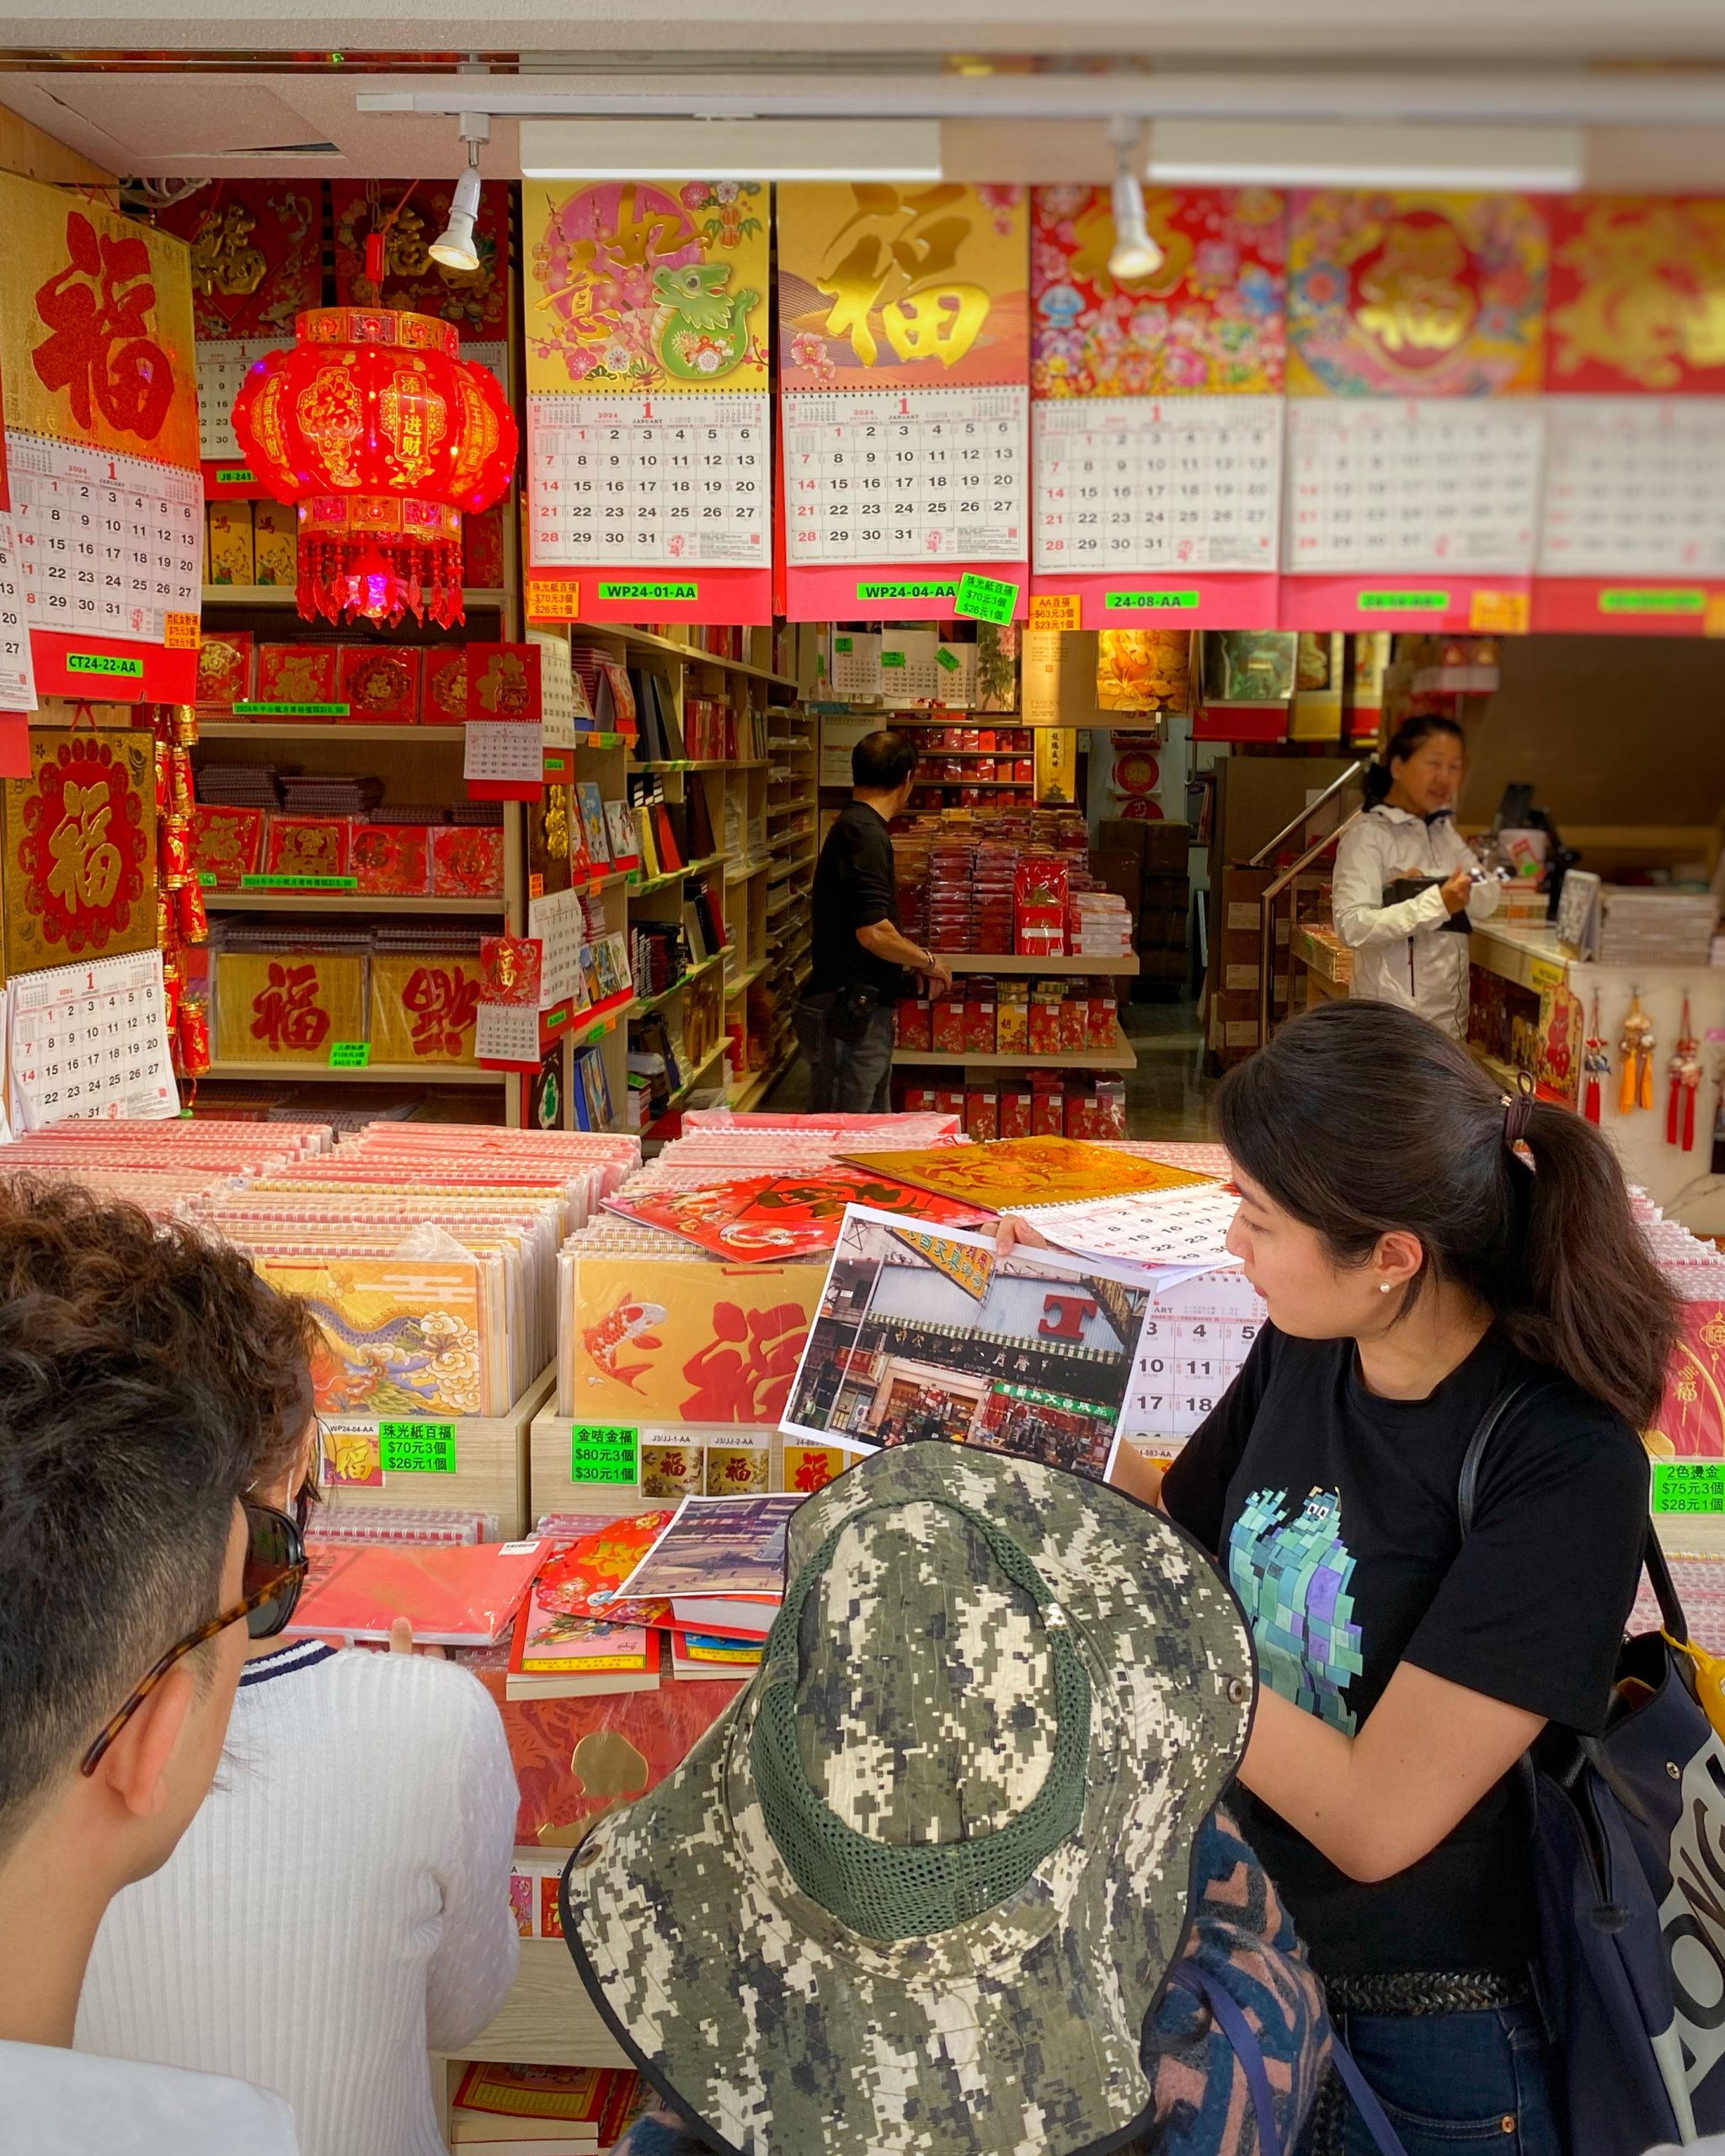 Explore Sham Shui Po Tour – every bit local!